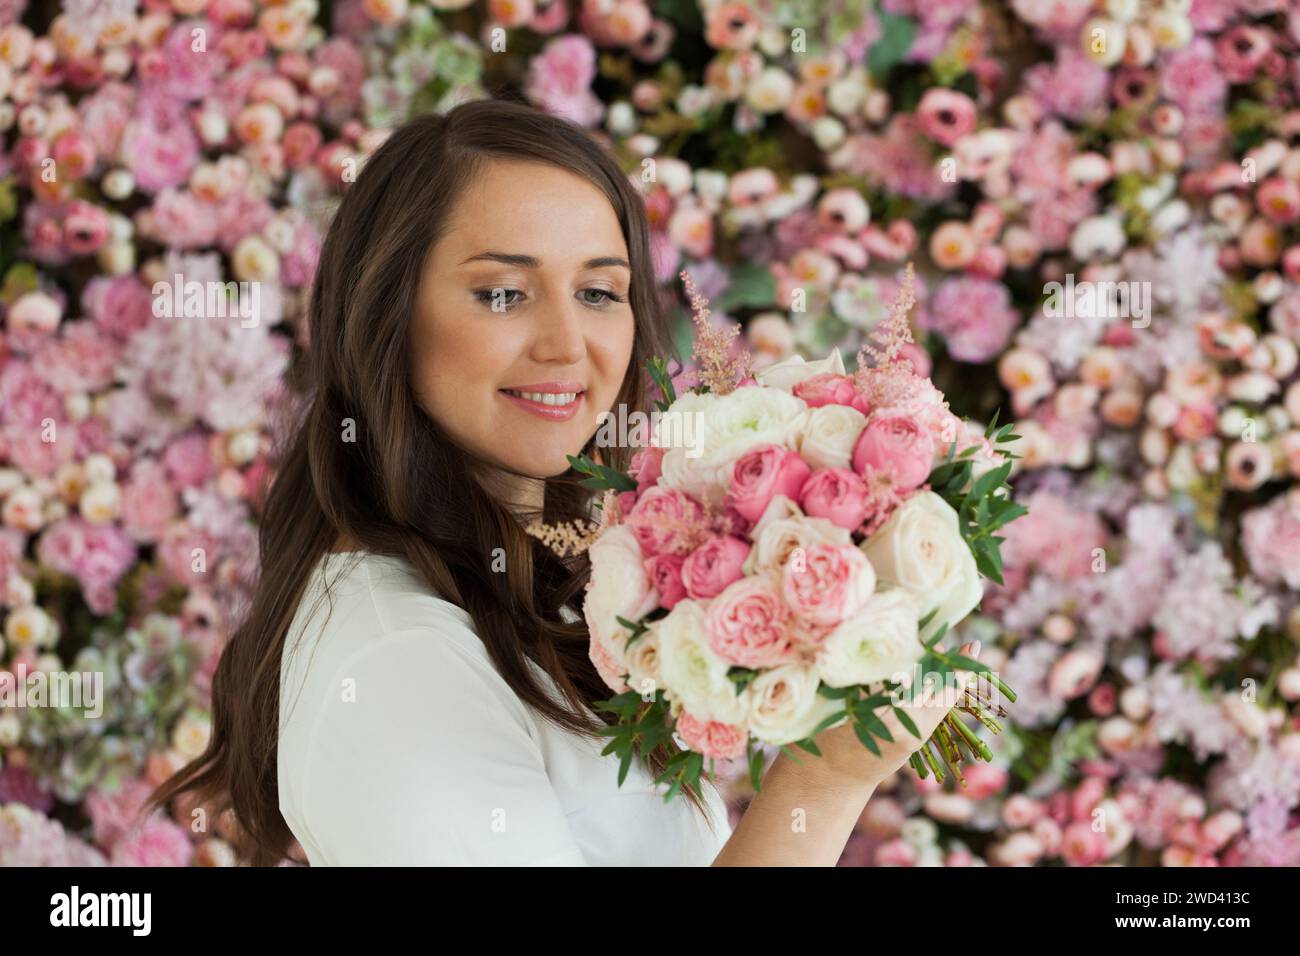 Schöne gesunde Frau lächelt und hält bunte rosa Farbe Blumenstrauß auf floralem Frühling oder Sommer Hintergrund, Studio Mode Schönheit Porträt Stockfoto